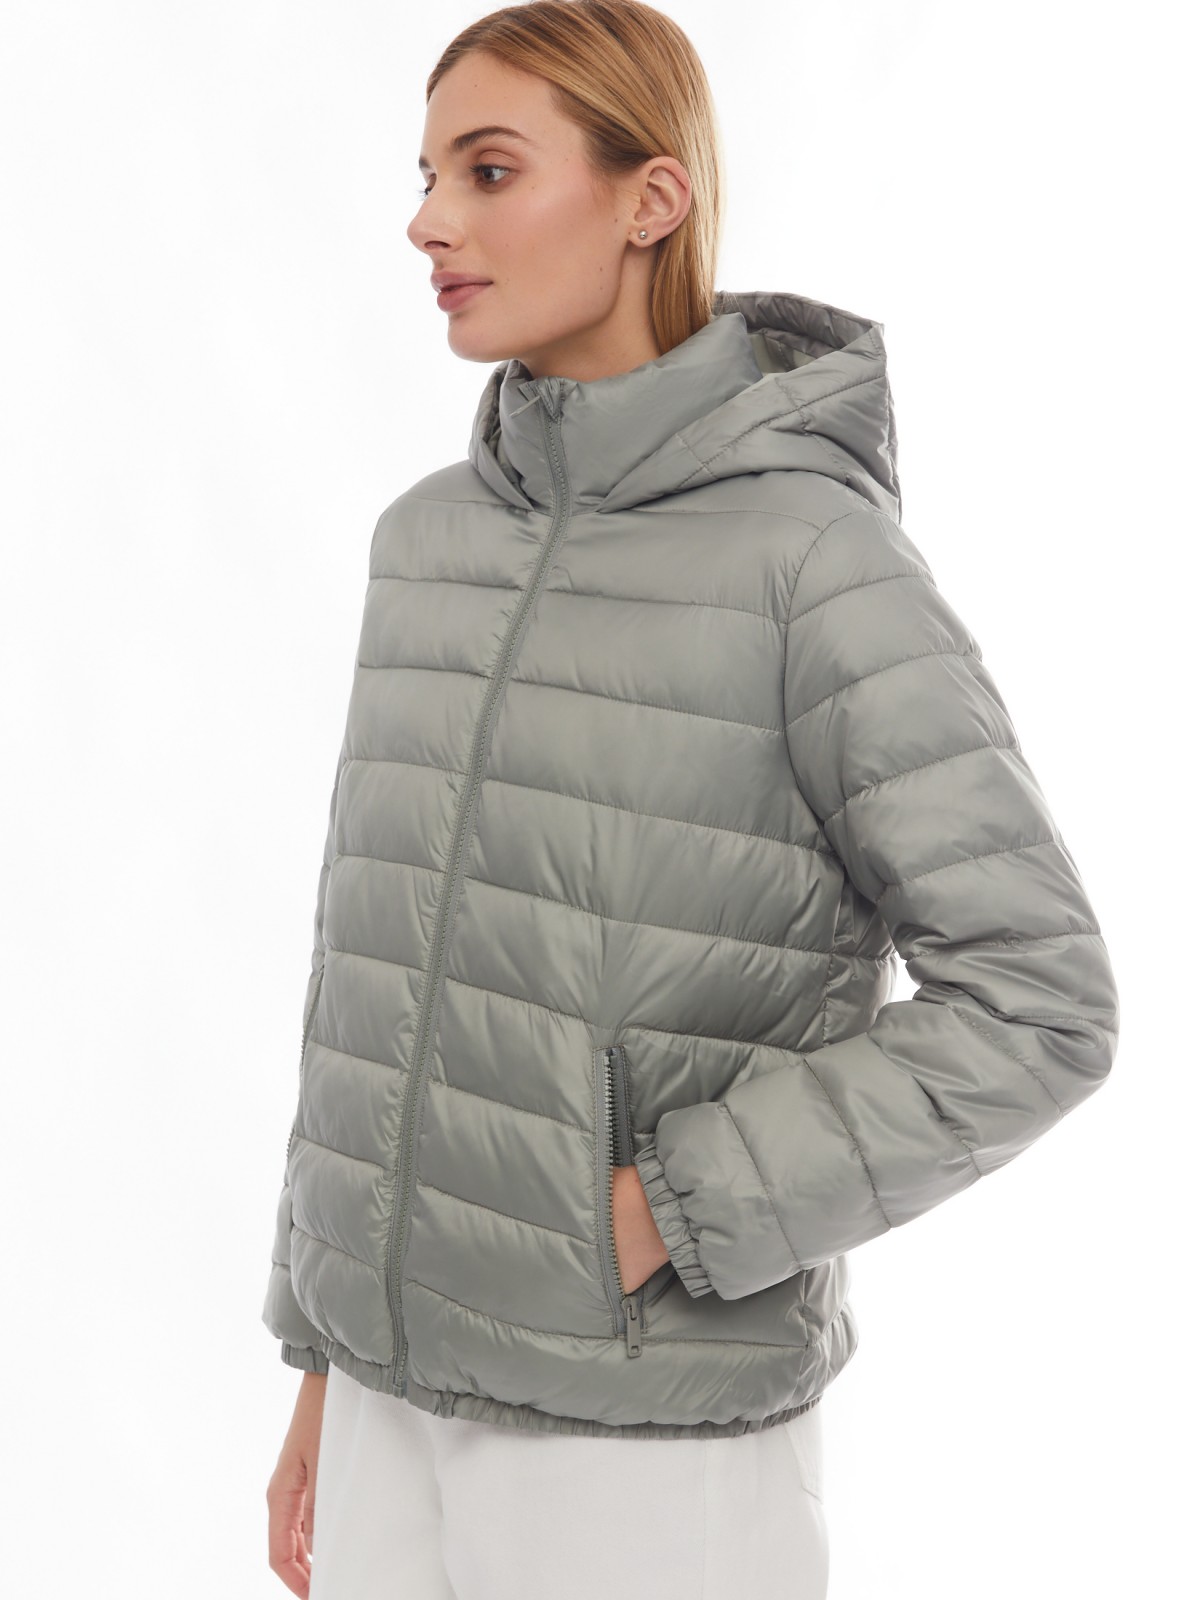 Утеплённая стёганая куртка на молнии с капюшоном zolla 024125112274, цвет хаки, размер XS - фото 3